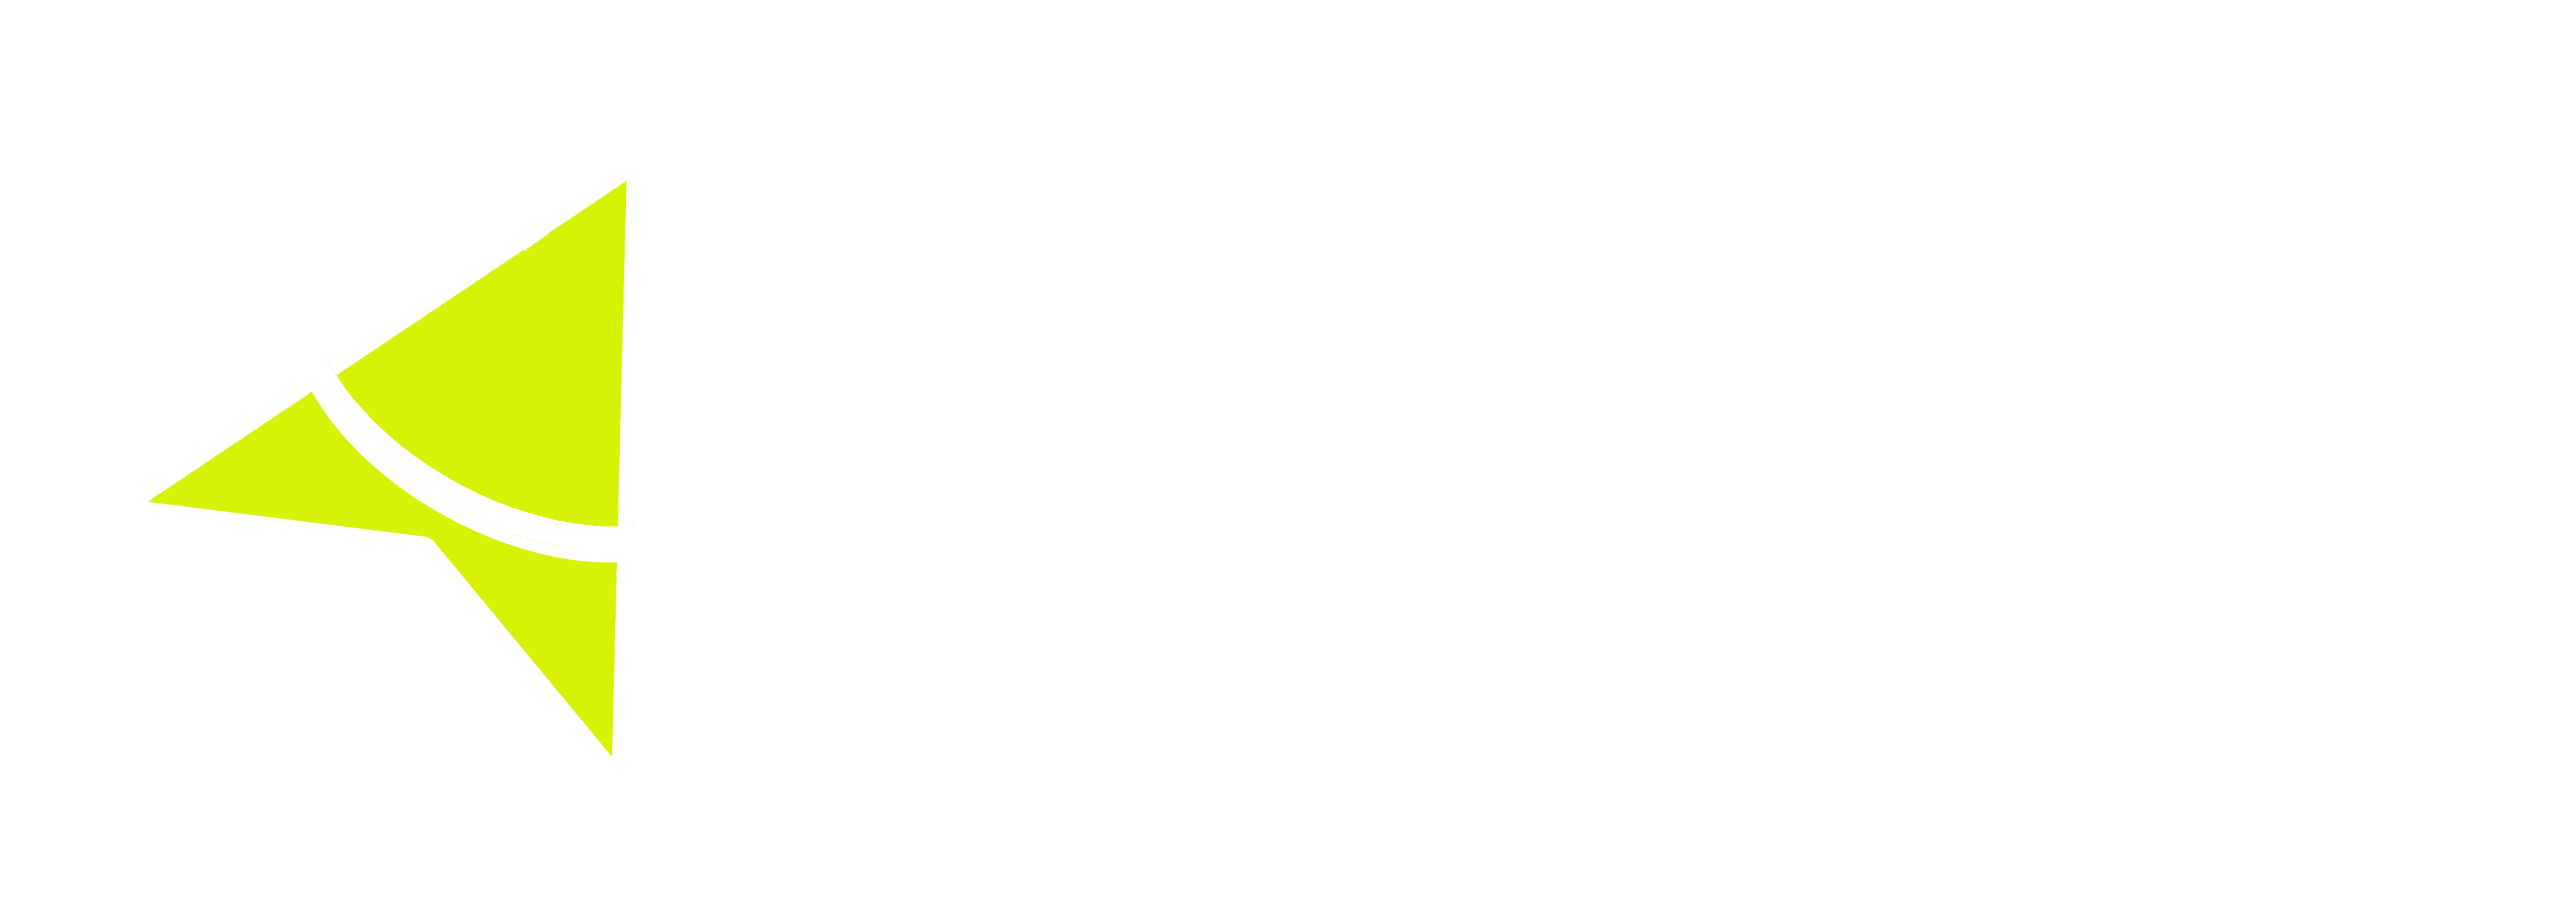 flashclick logo